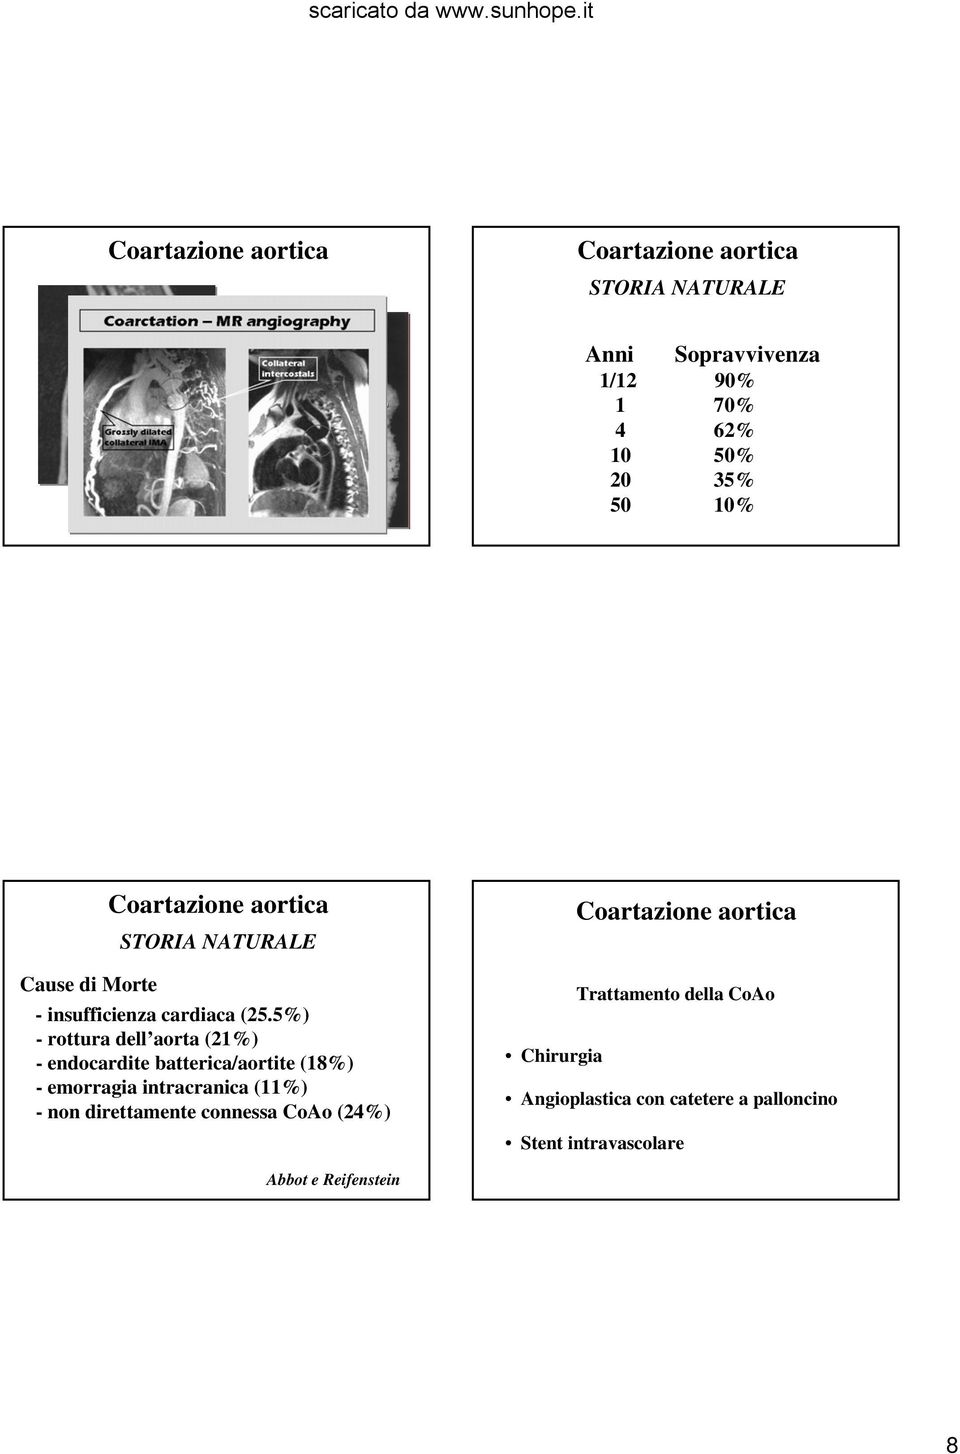 5%) - rottura dell aorta (21%) - endocardite batterica/aortite (18%) - emorragia intracranica